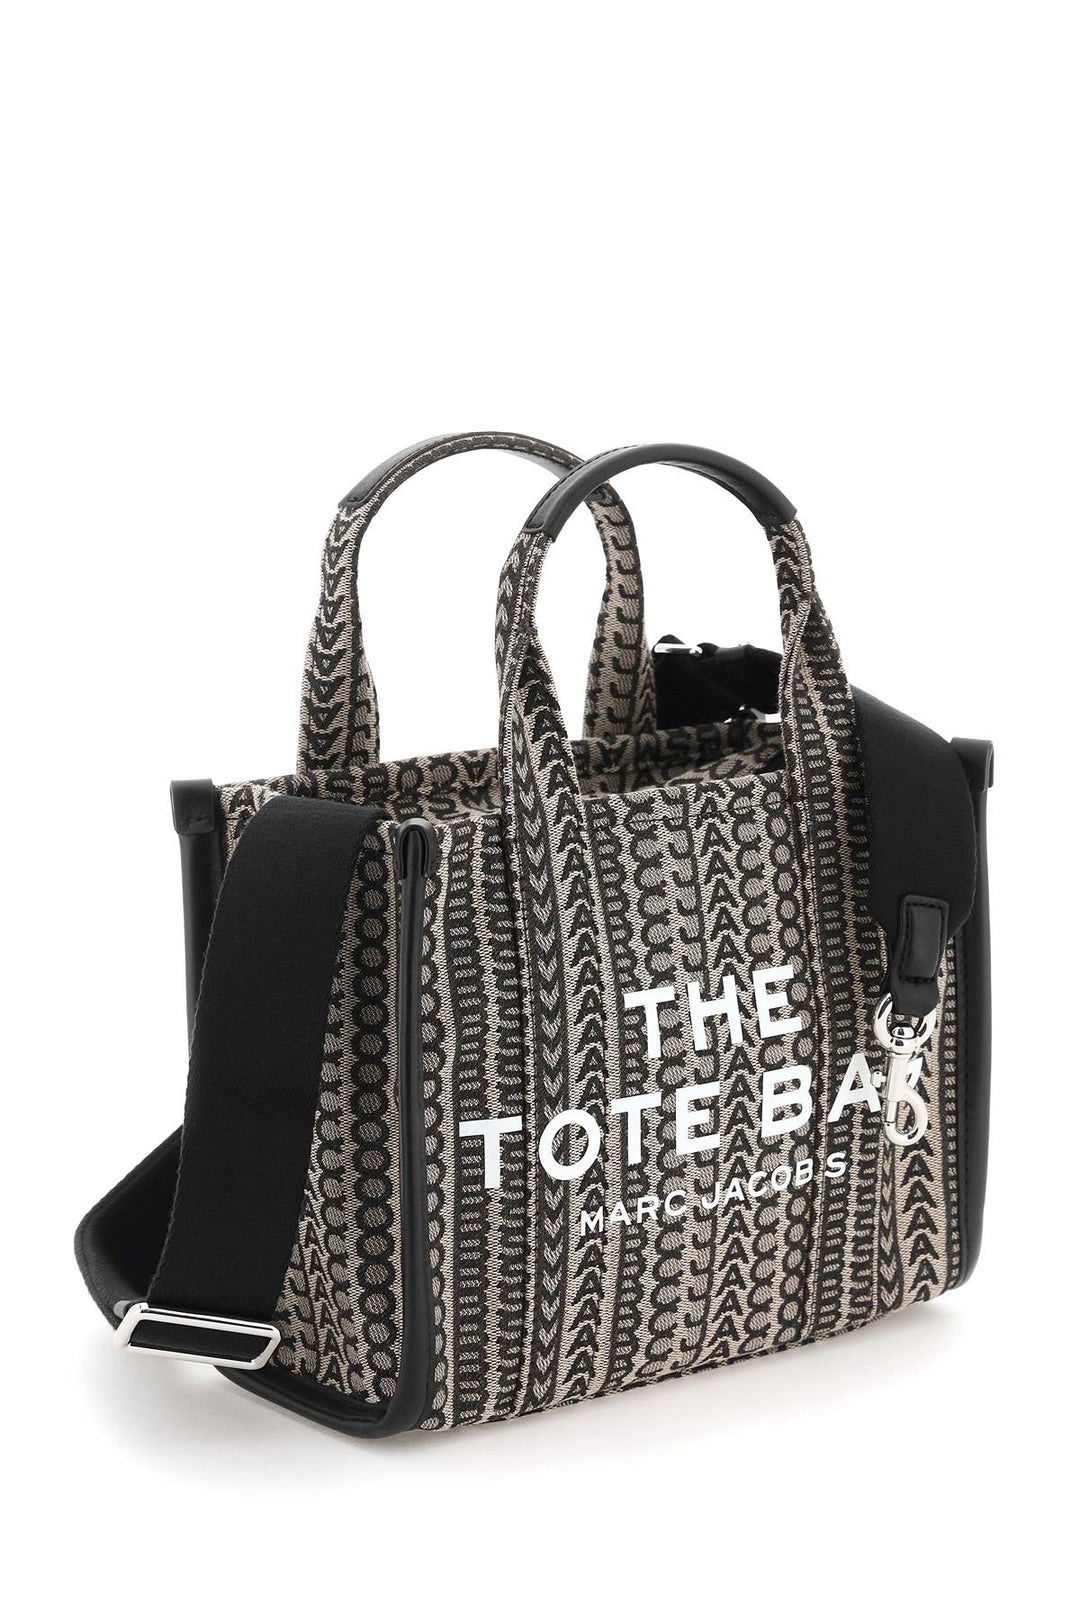 The Mini Tote Bag Jacquard - Marc Jacobs - Donna